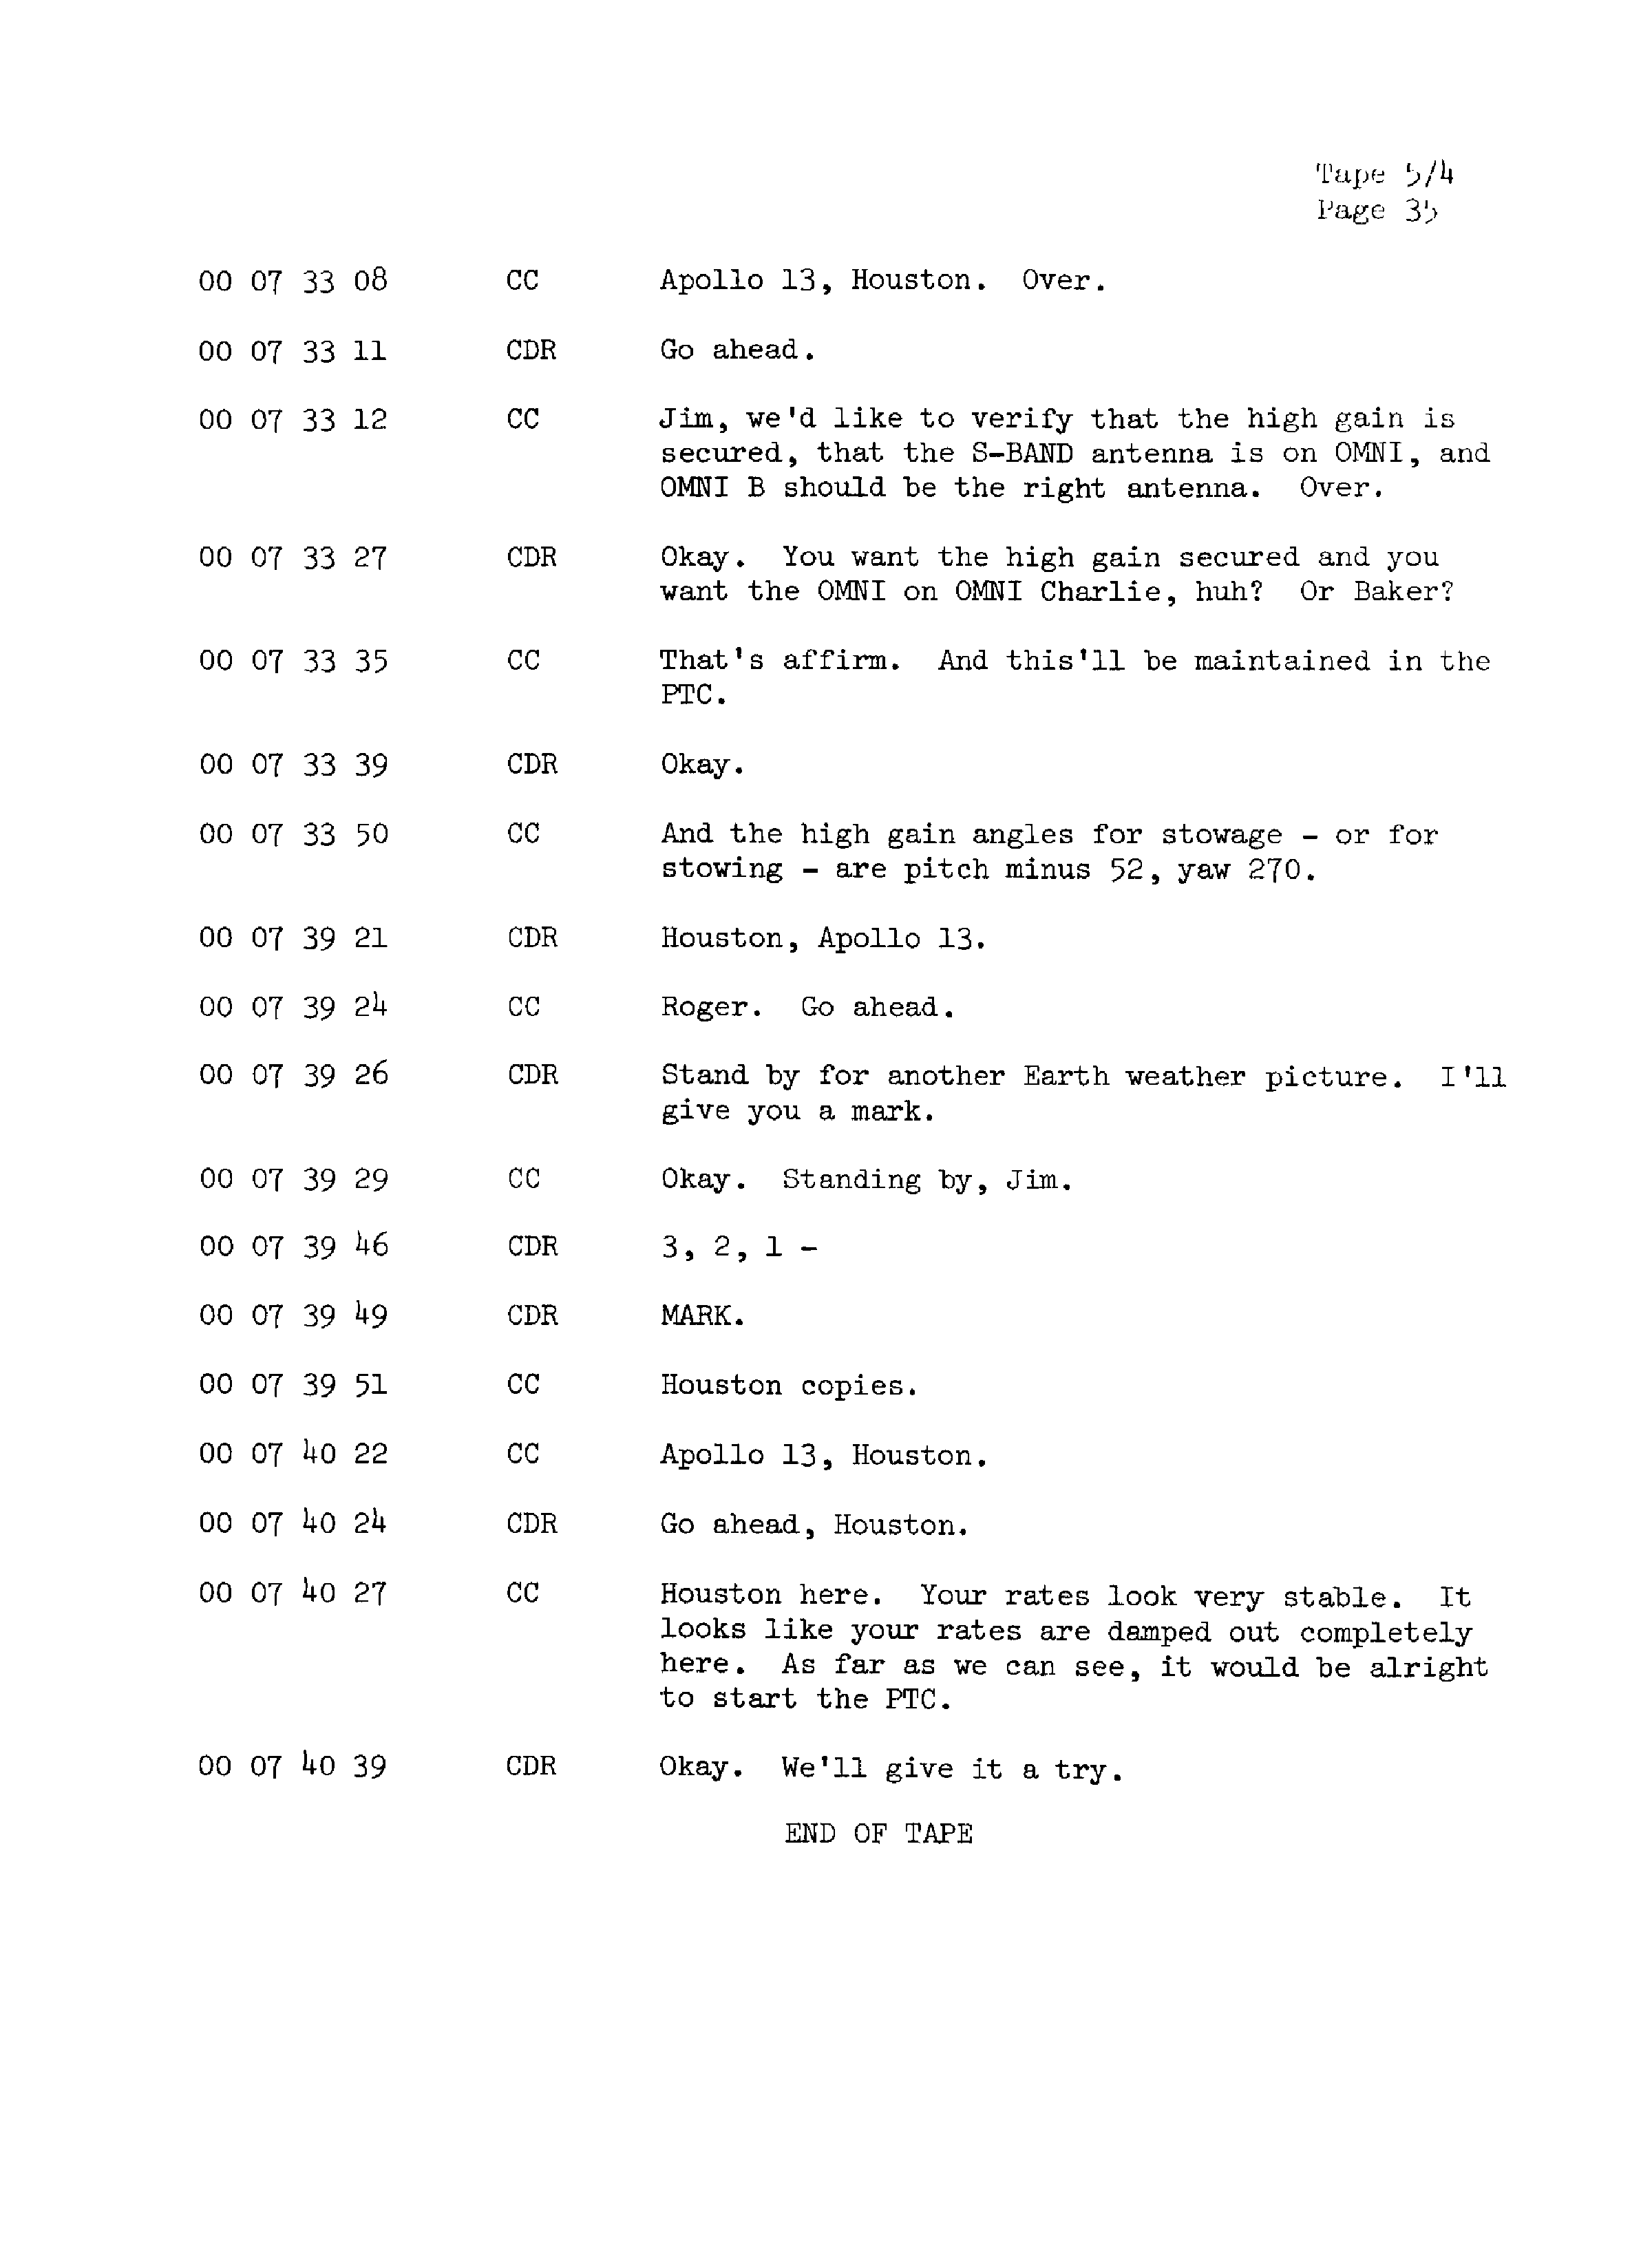 Page 42 of Apollo 13’s original transcript